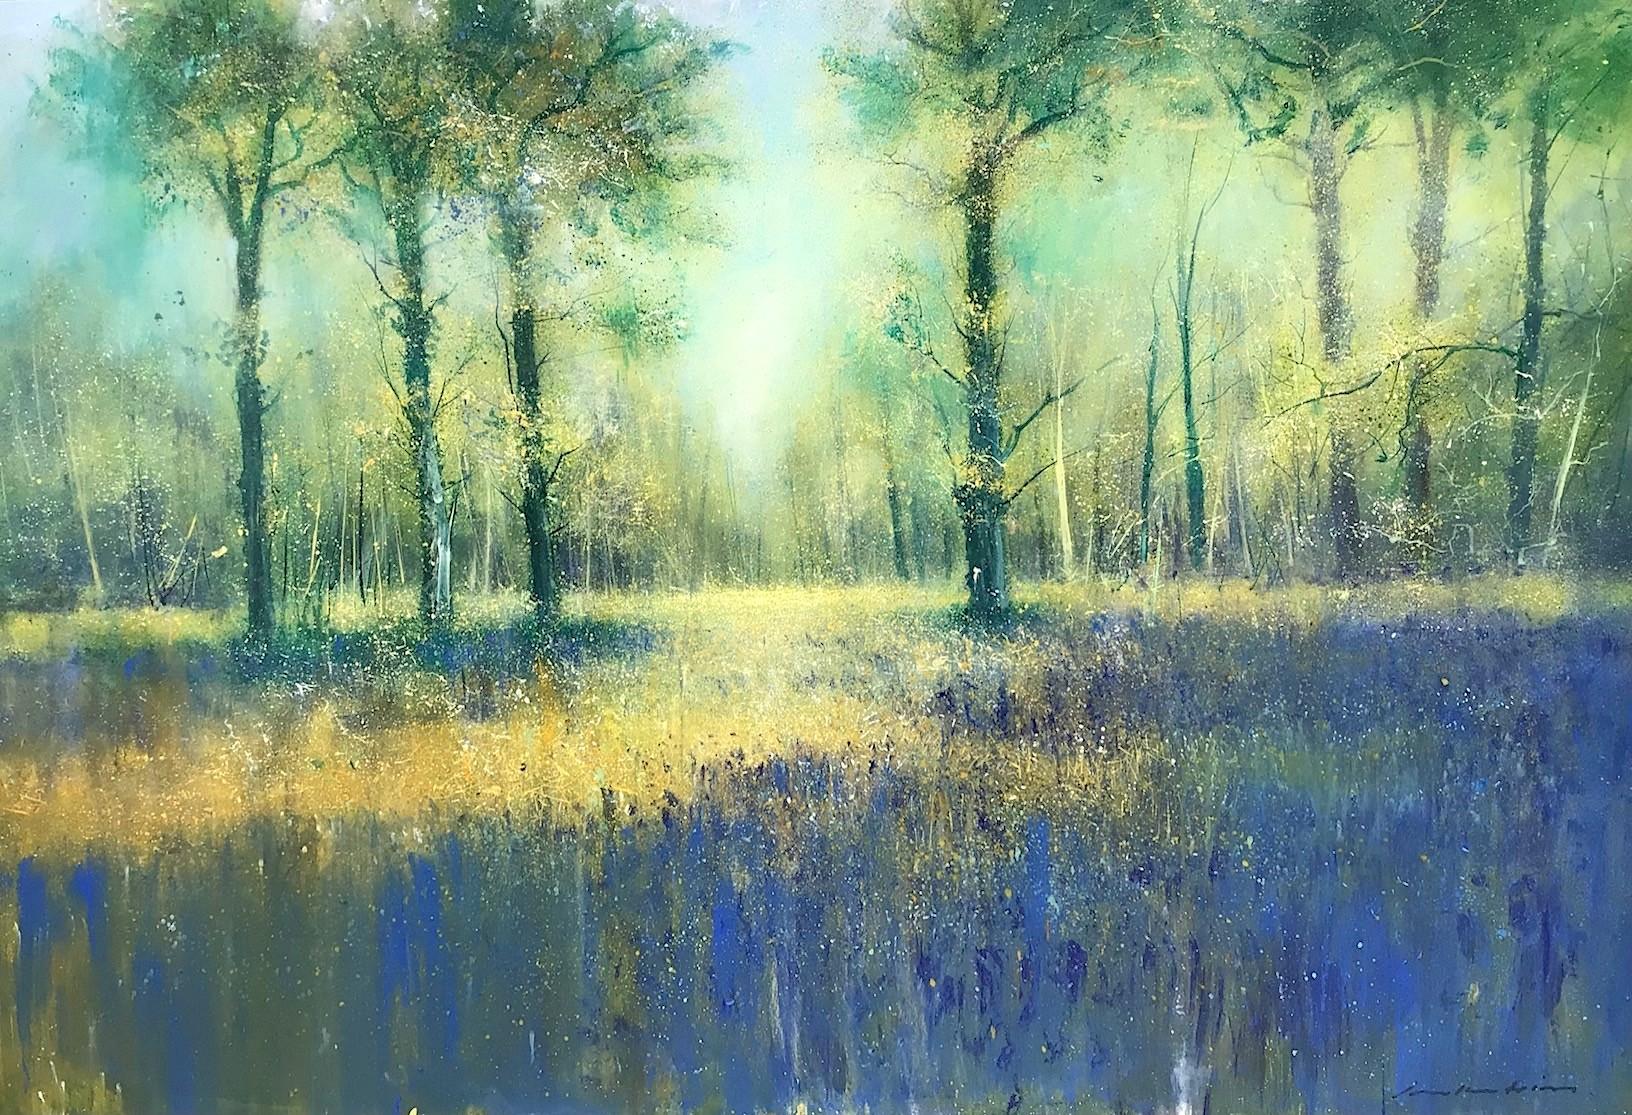 Sunlight and Bluebells-original impressionism floral landscape painting-Artwork